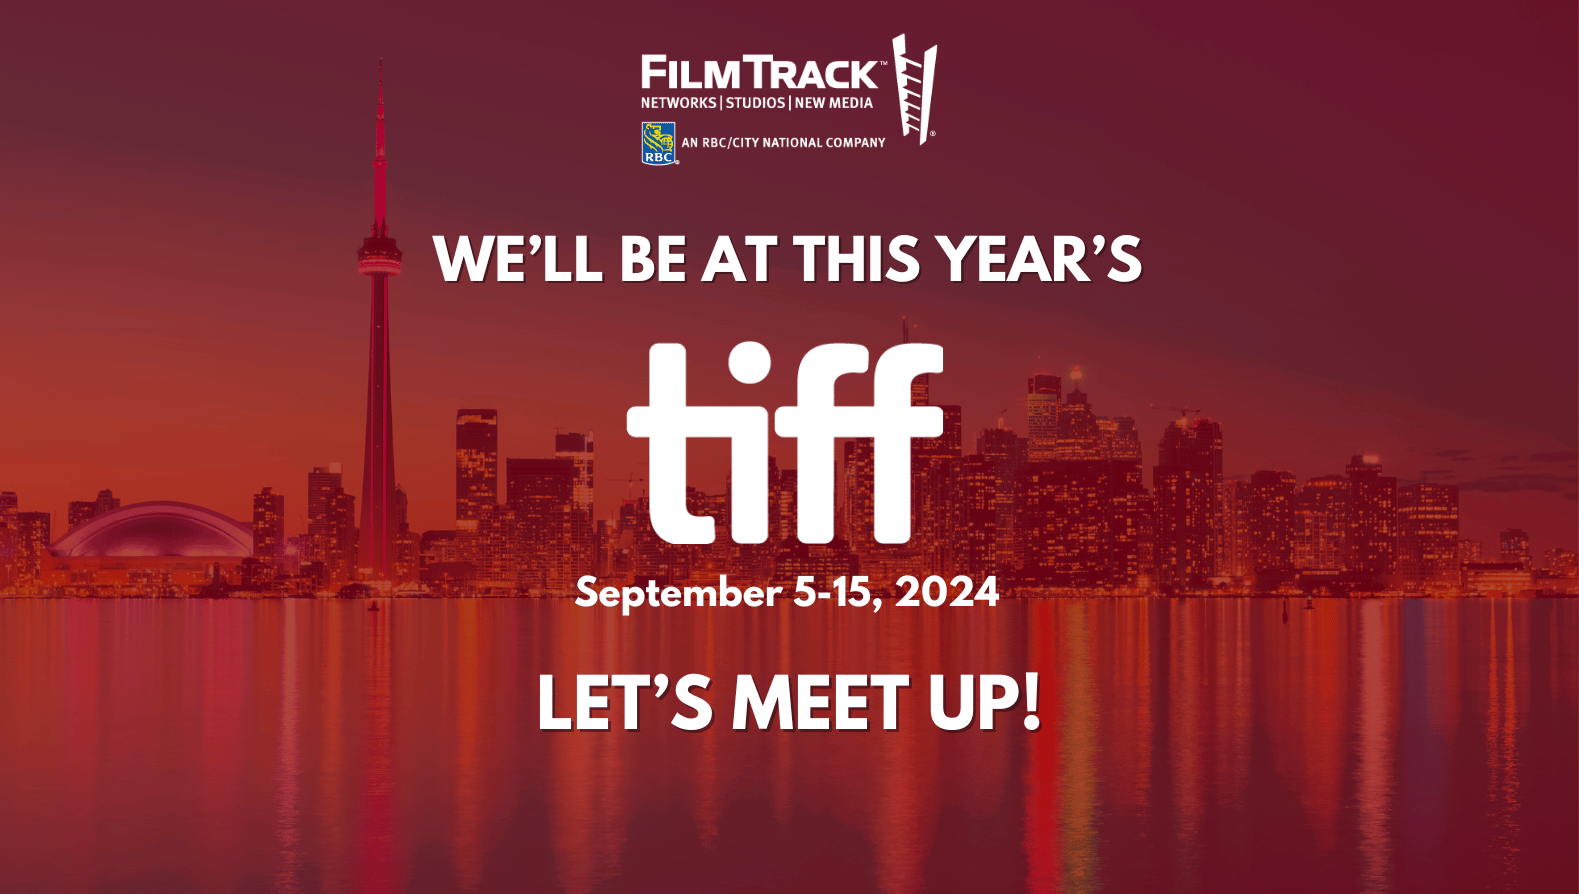 FilmTrack at TIFF 2024